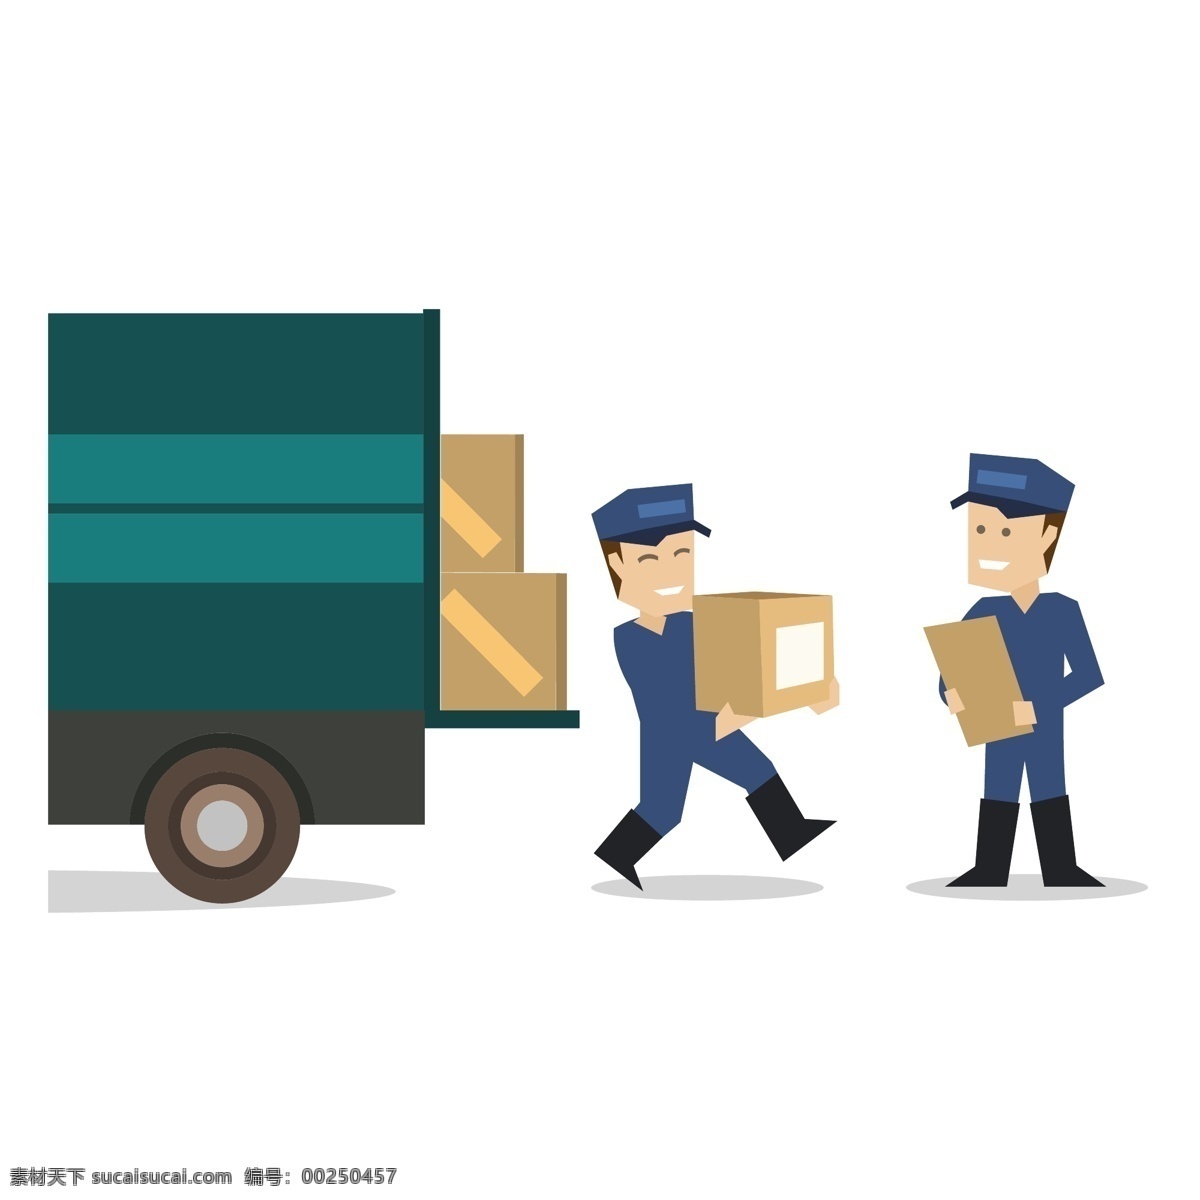 仓储物流 运输 矢量 仓储 物流运输 快递 快递运输 快递员 快递邮件 包裹 货运运输